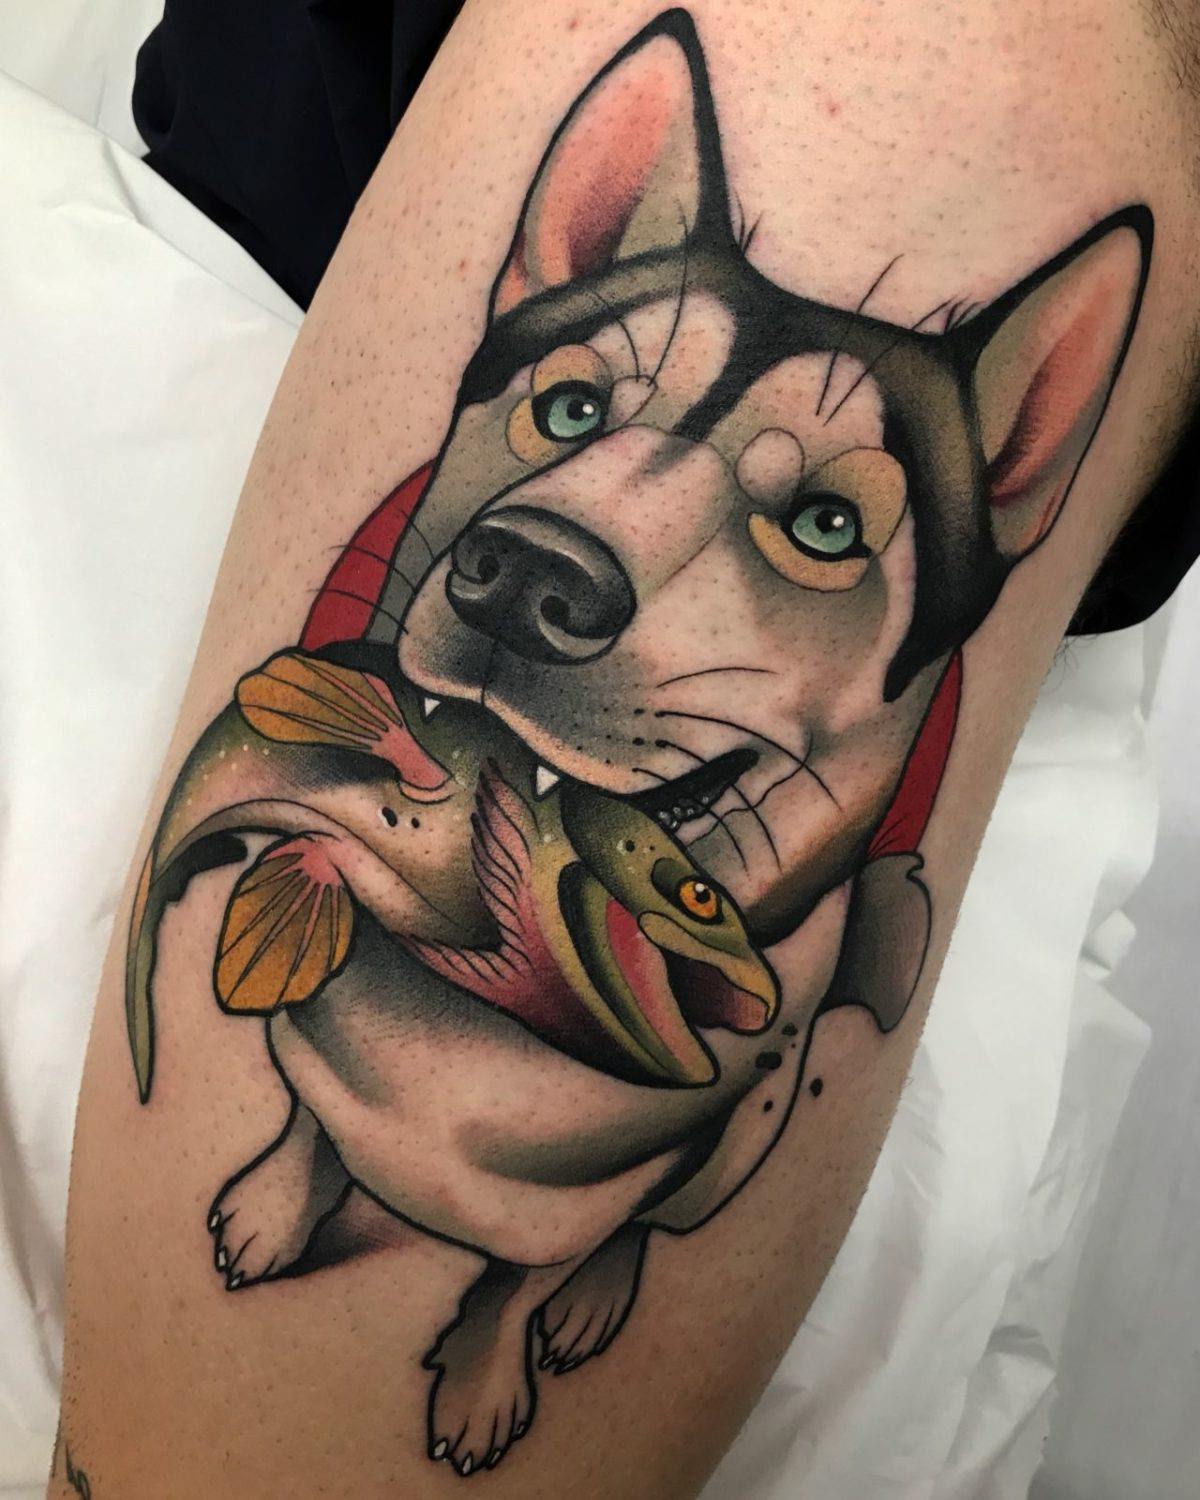 Tatuagem colorida de um cão segurando o peixe com a boca